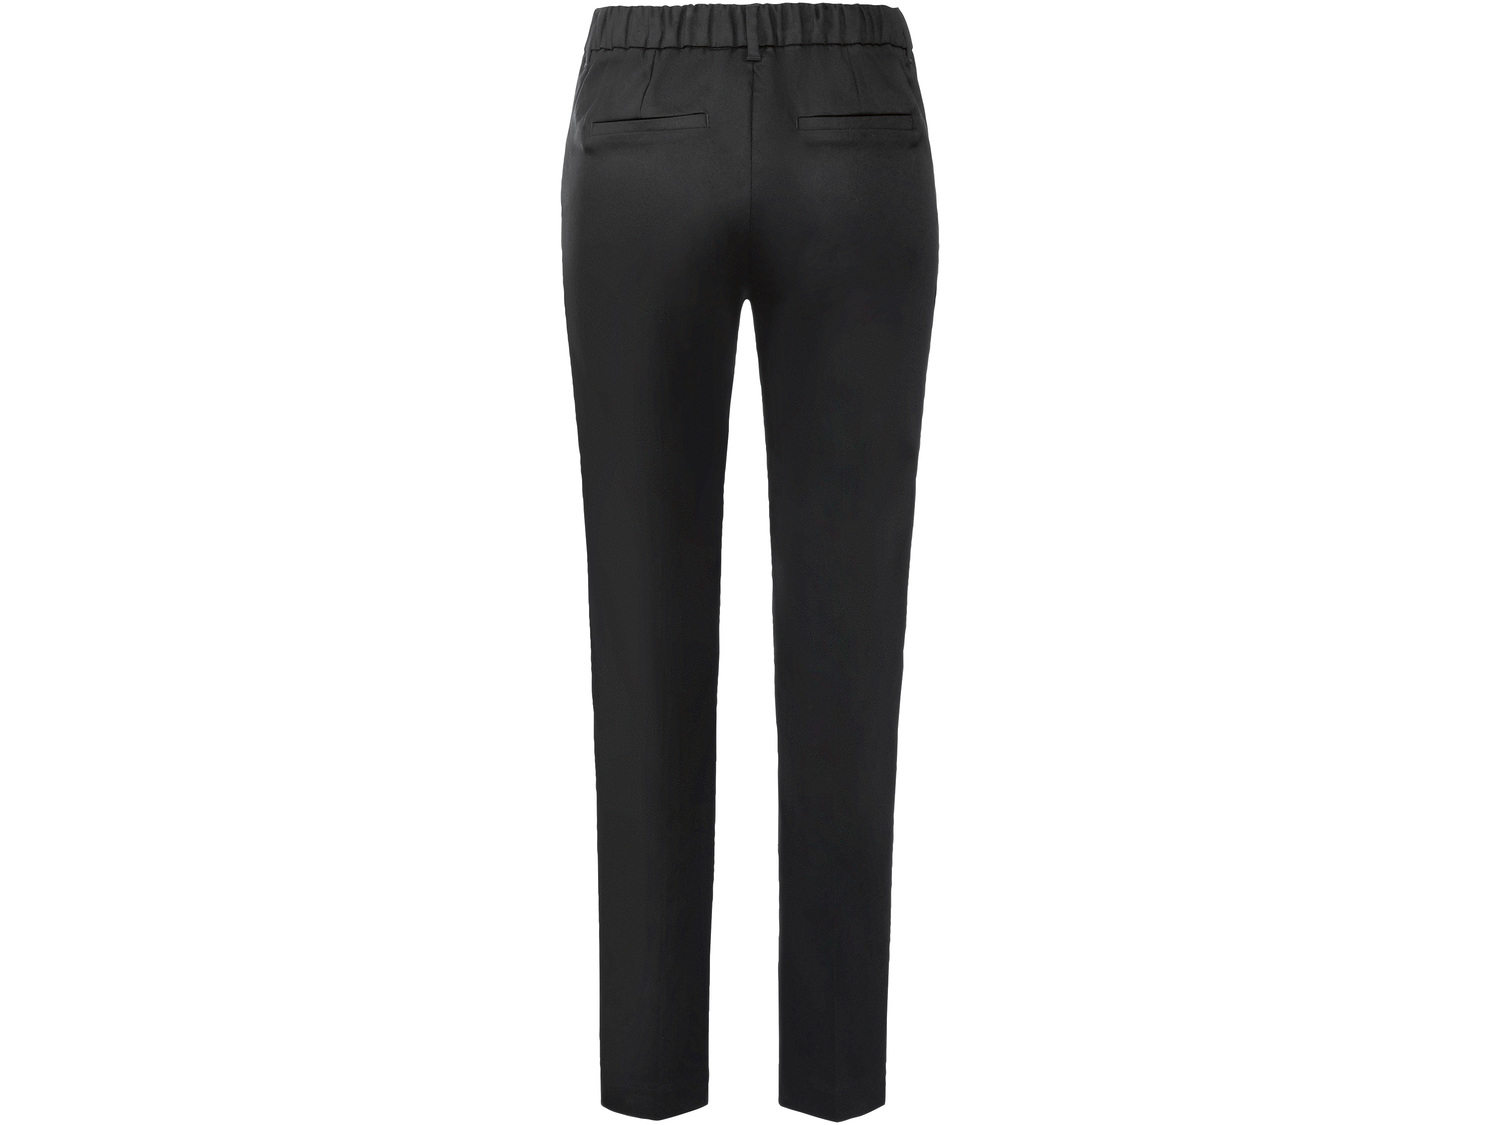 Spodnie damskie Esmara, cena 39,99 PLN 
- rozmiary: 34-46
- klasyczny kr&oacute;j ...